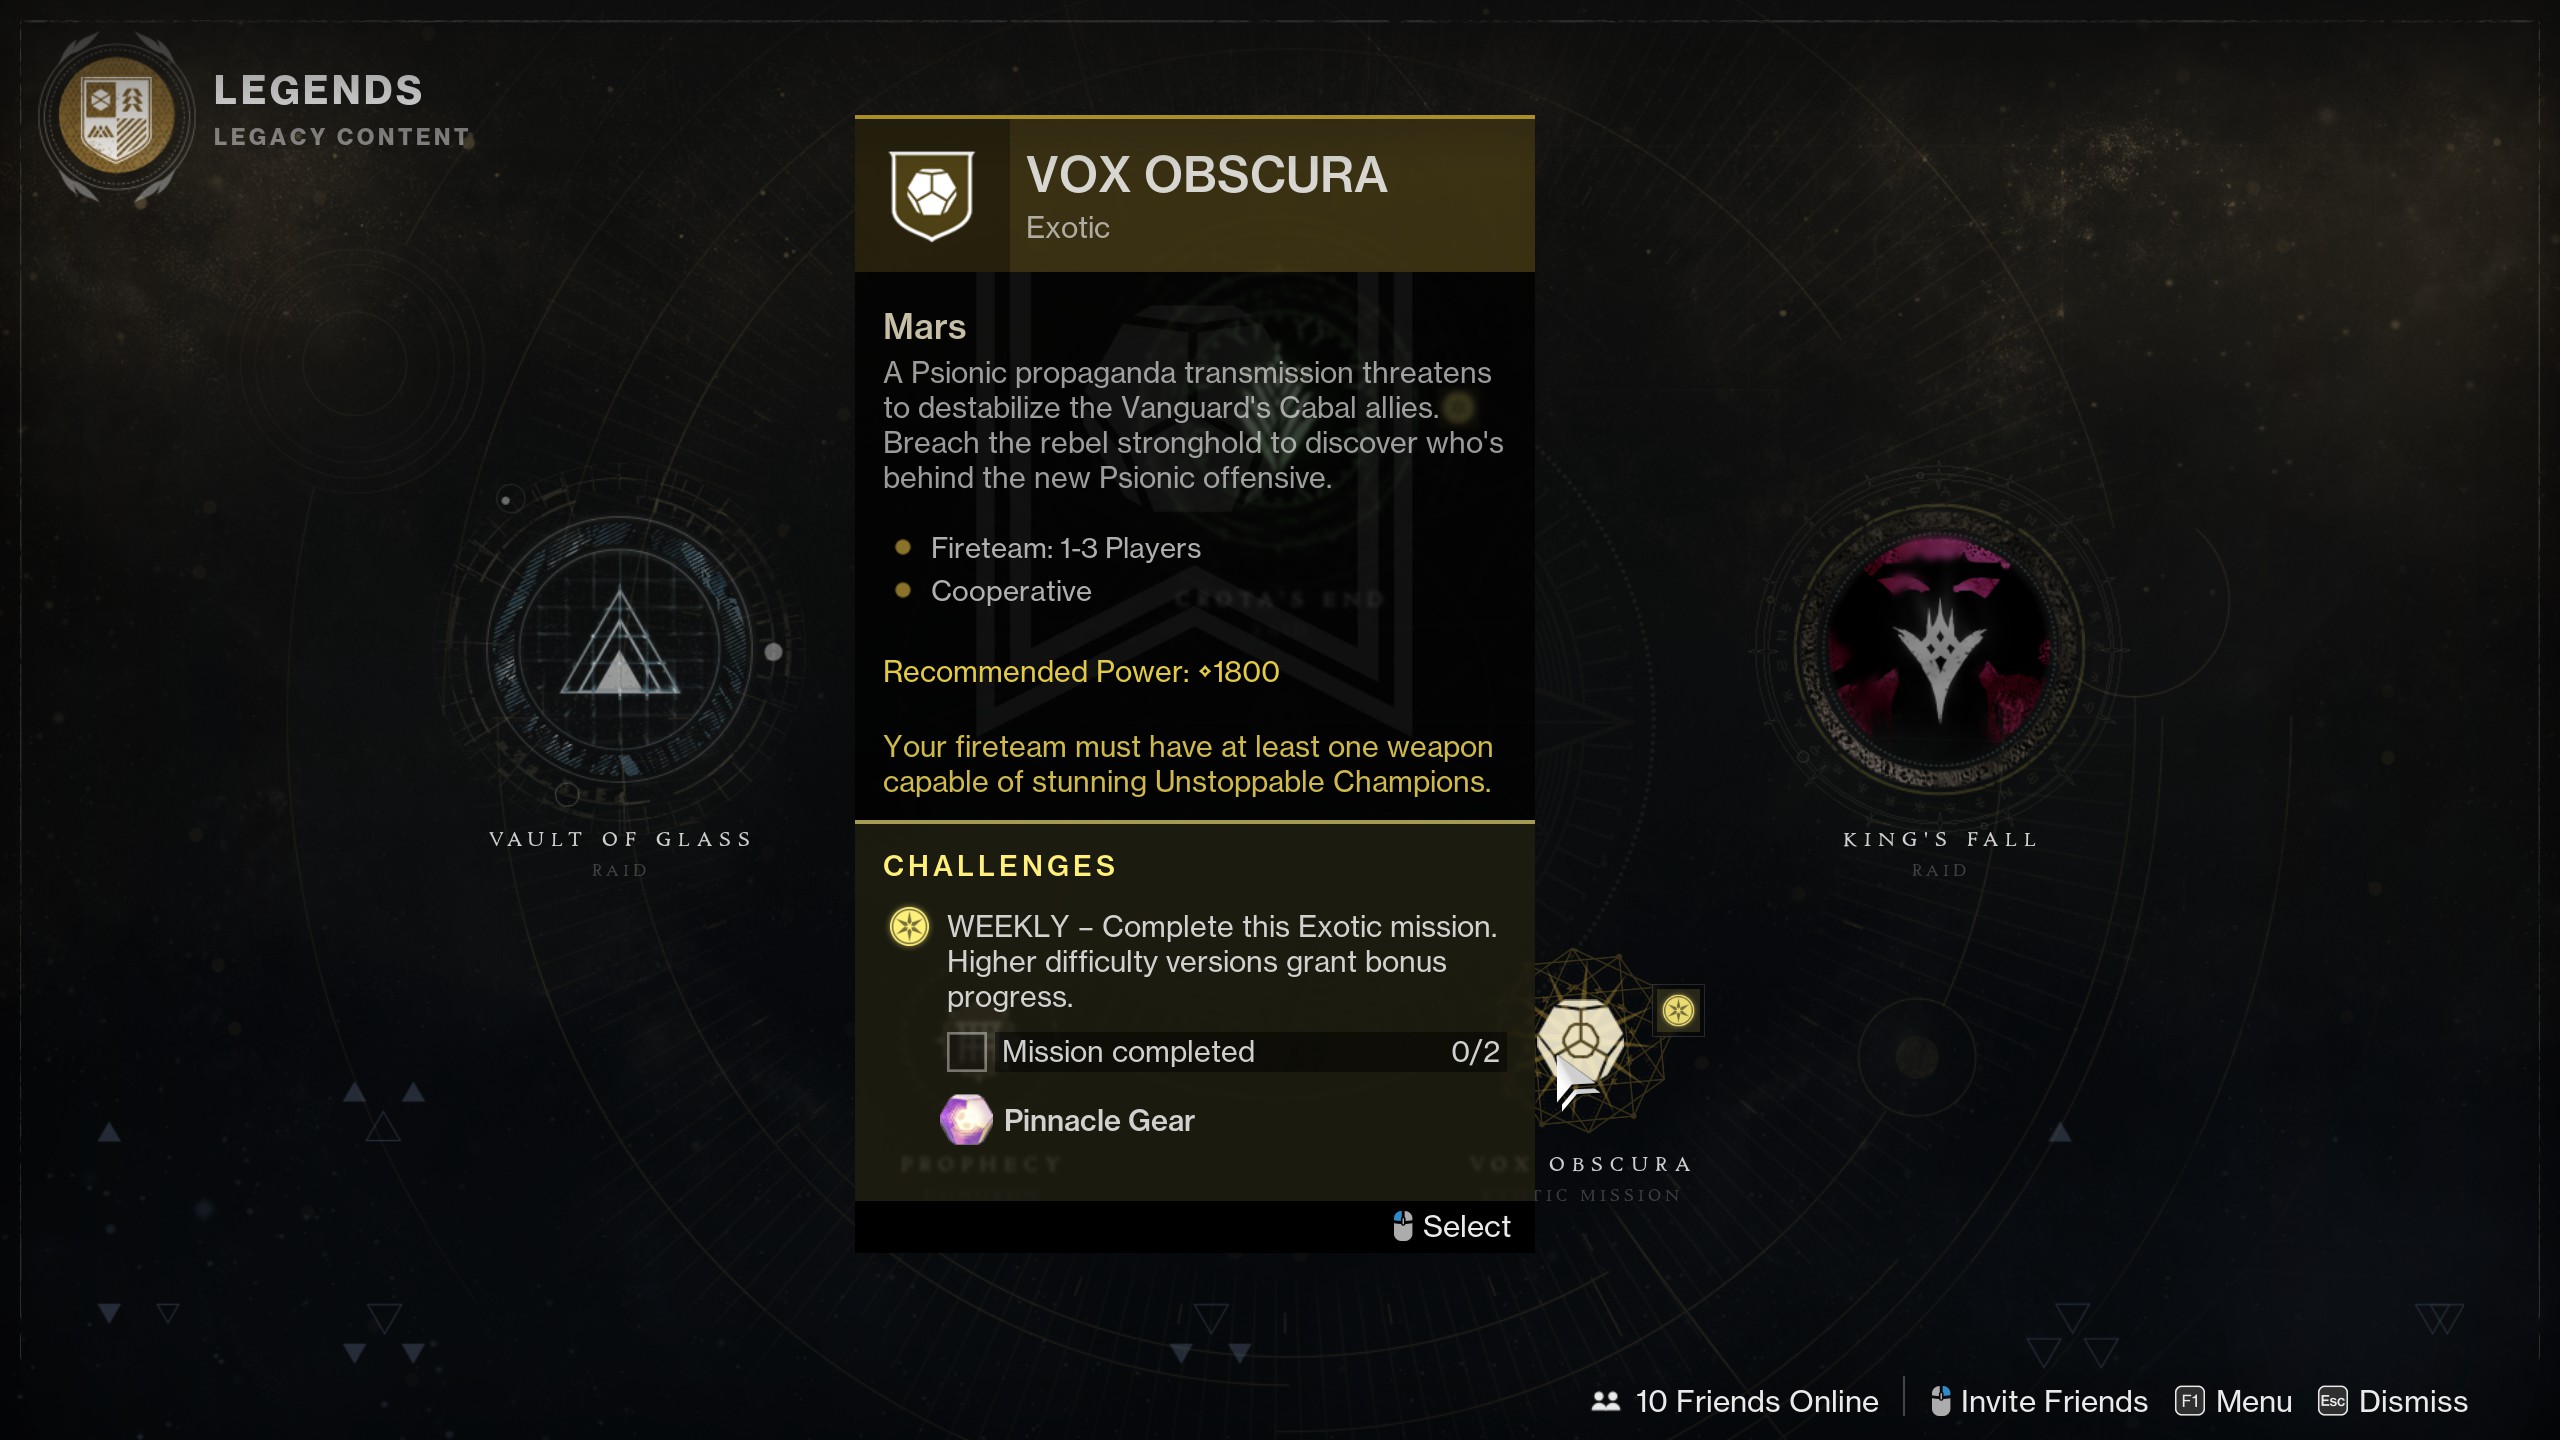 Destiny 2 breech-loaded grenade launcher - Vox Obscura